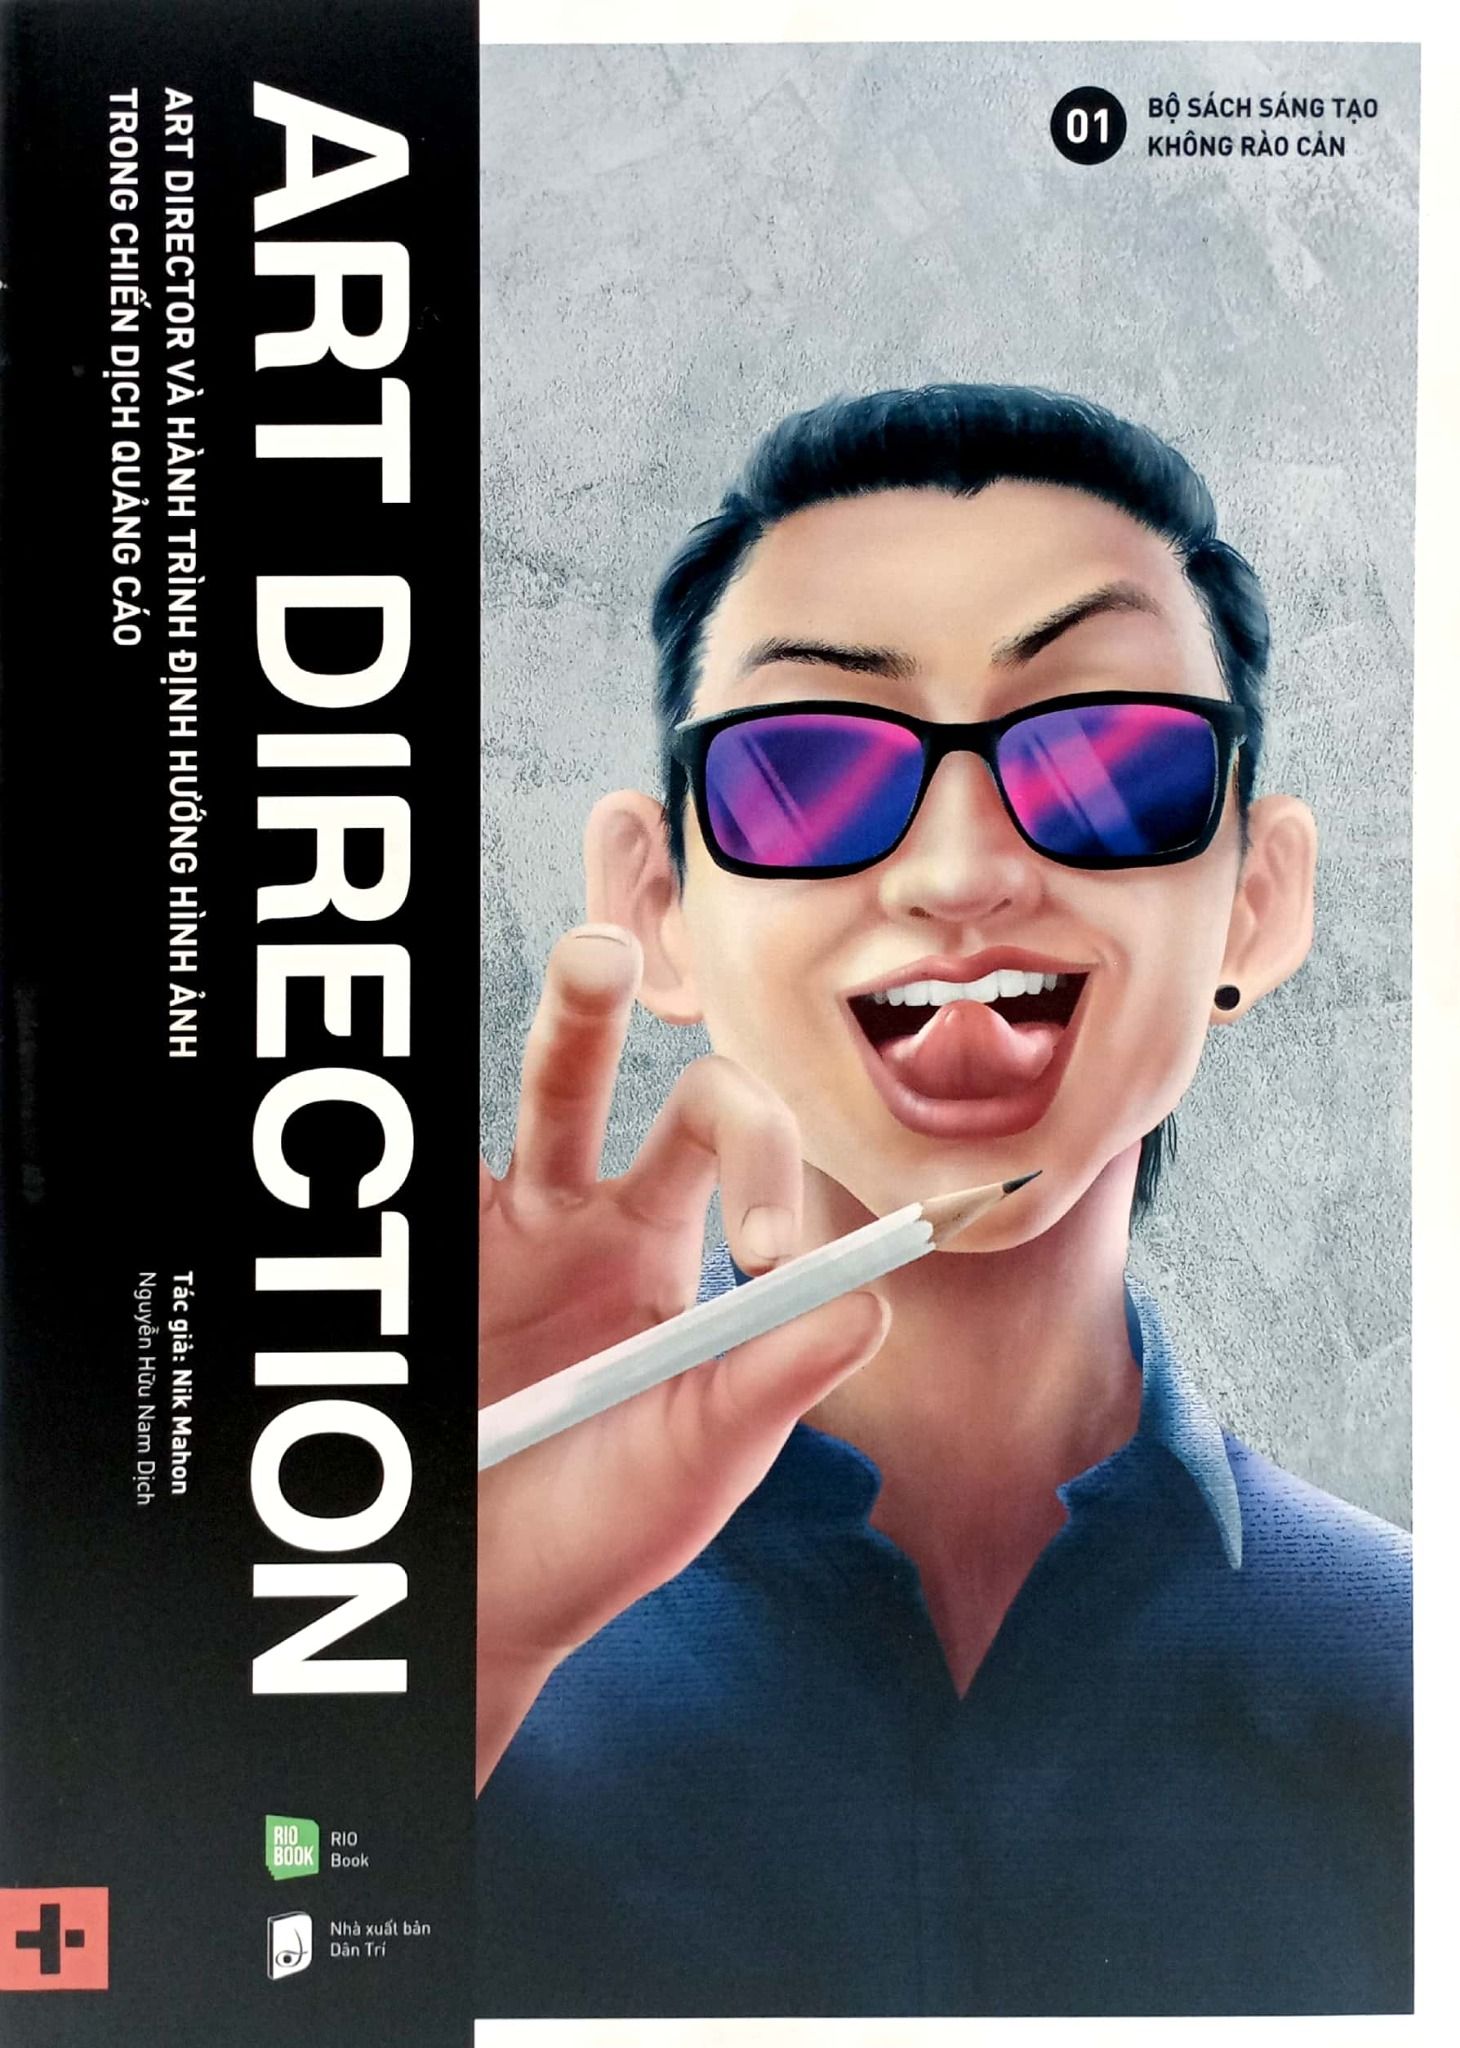  Art Direction - Art Director Và Hành Trình Định Hướng Hình Ảnh Trong Chiến Dịch Quảng Cáo 